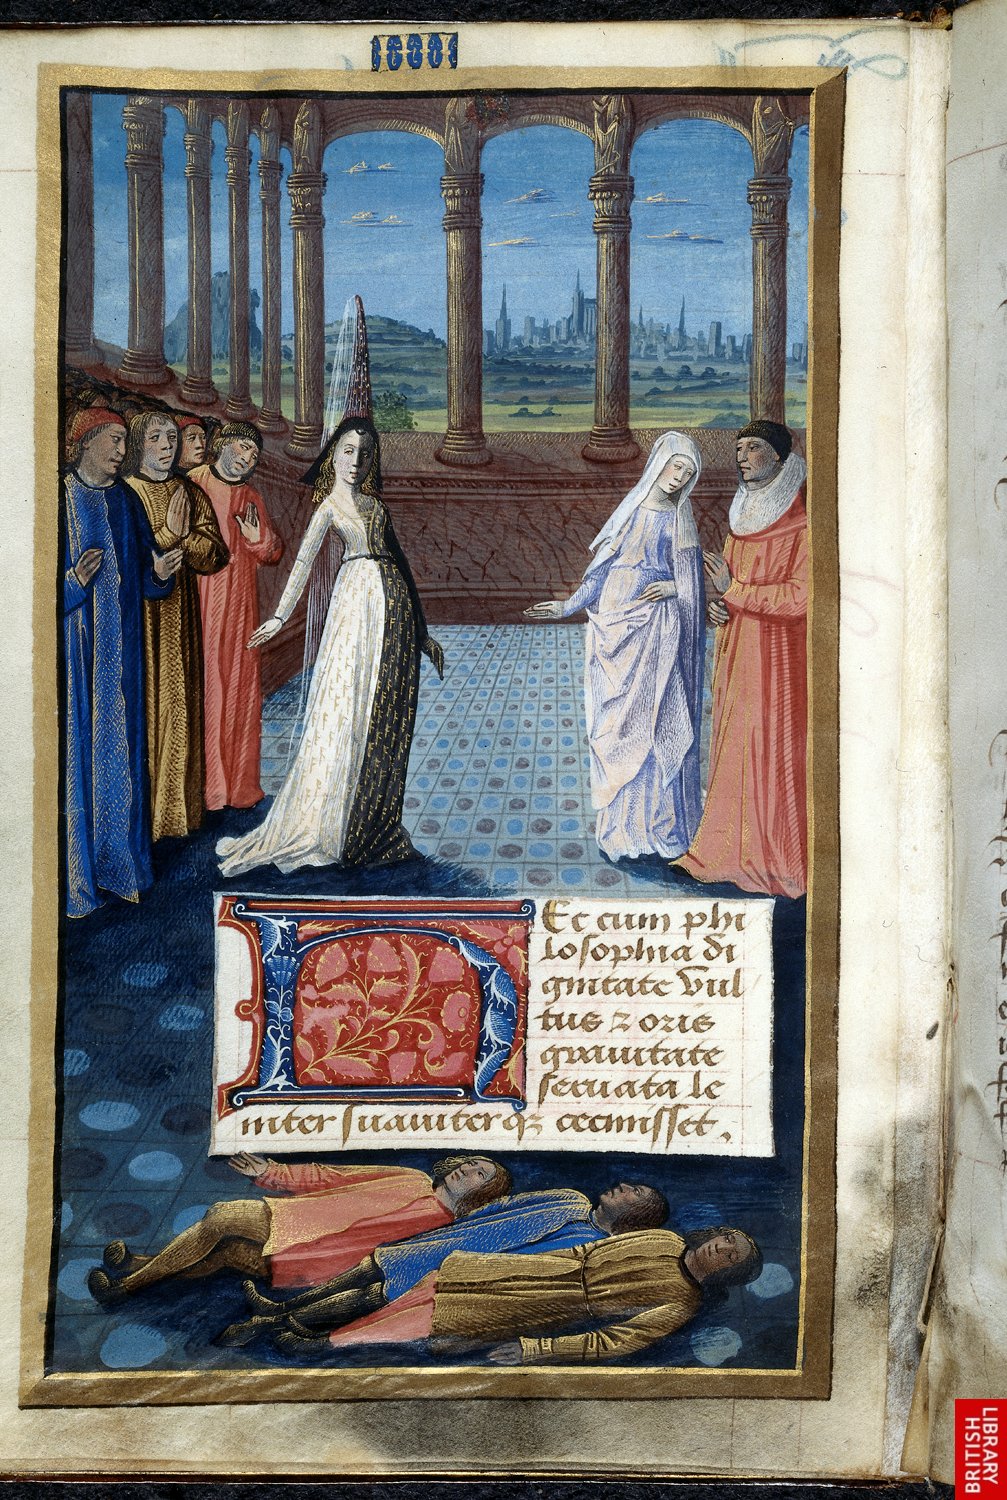 1477 - from Livre de Boece de Consolacion, book 2 - attributed to Jean Colombe